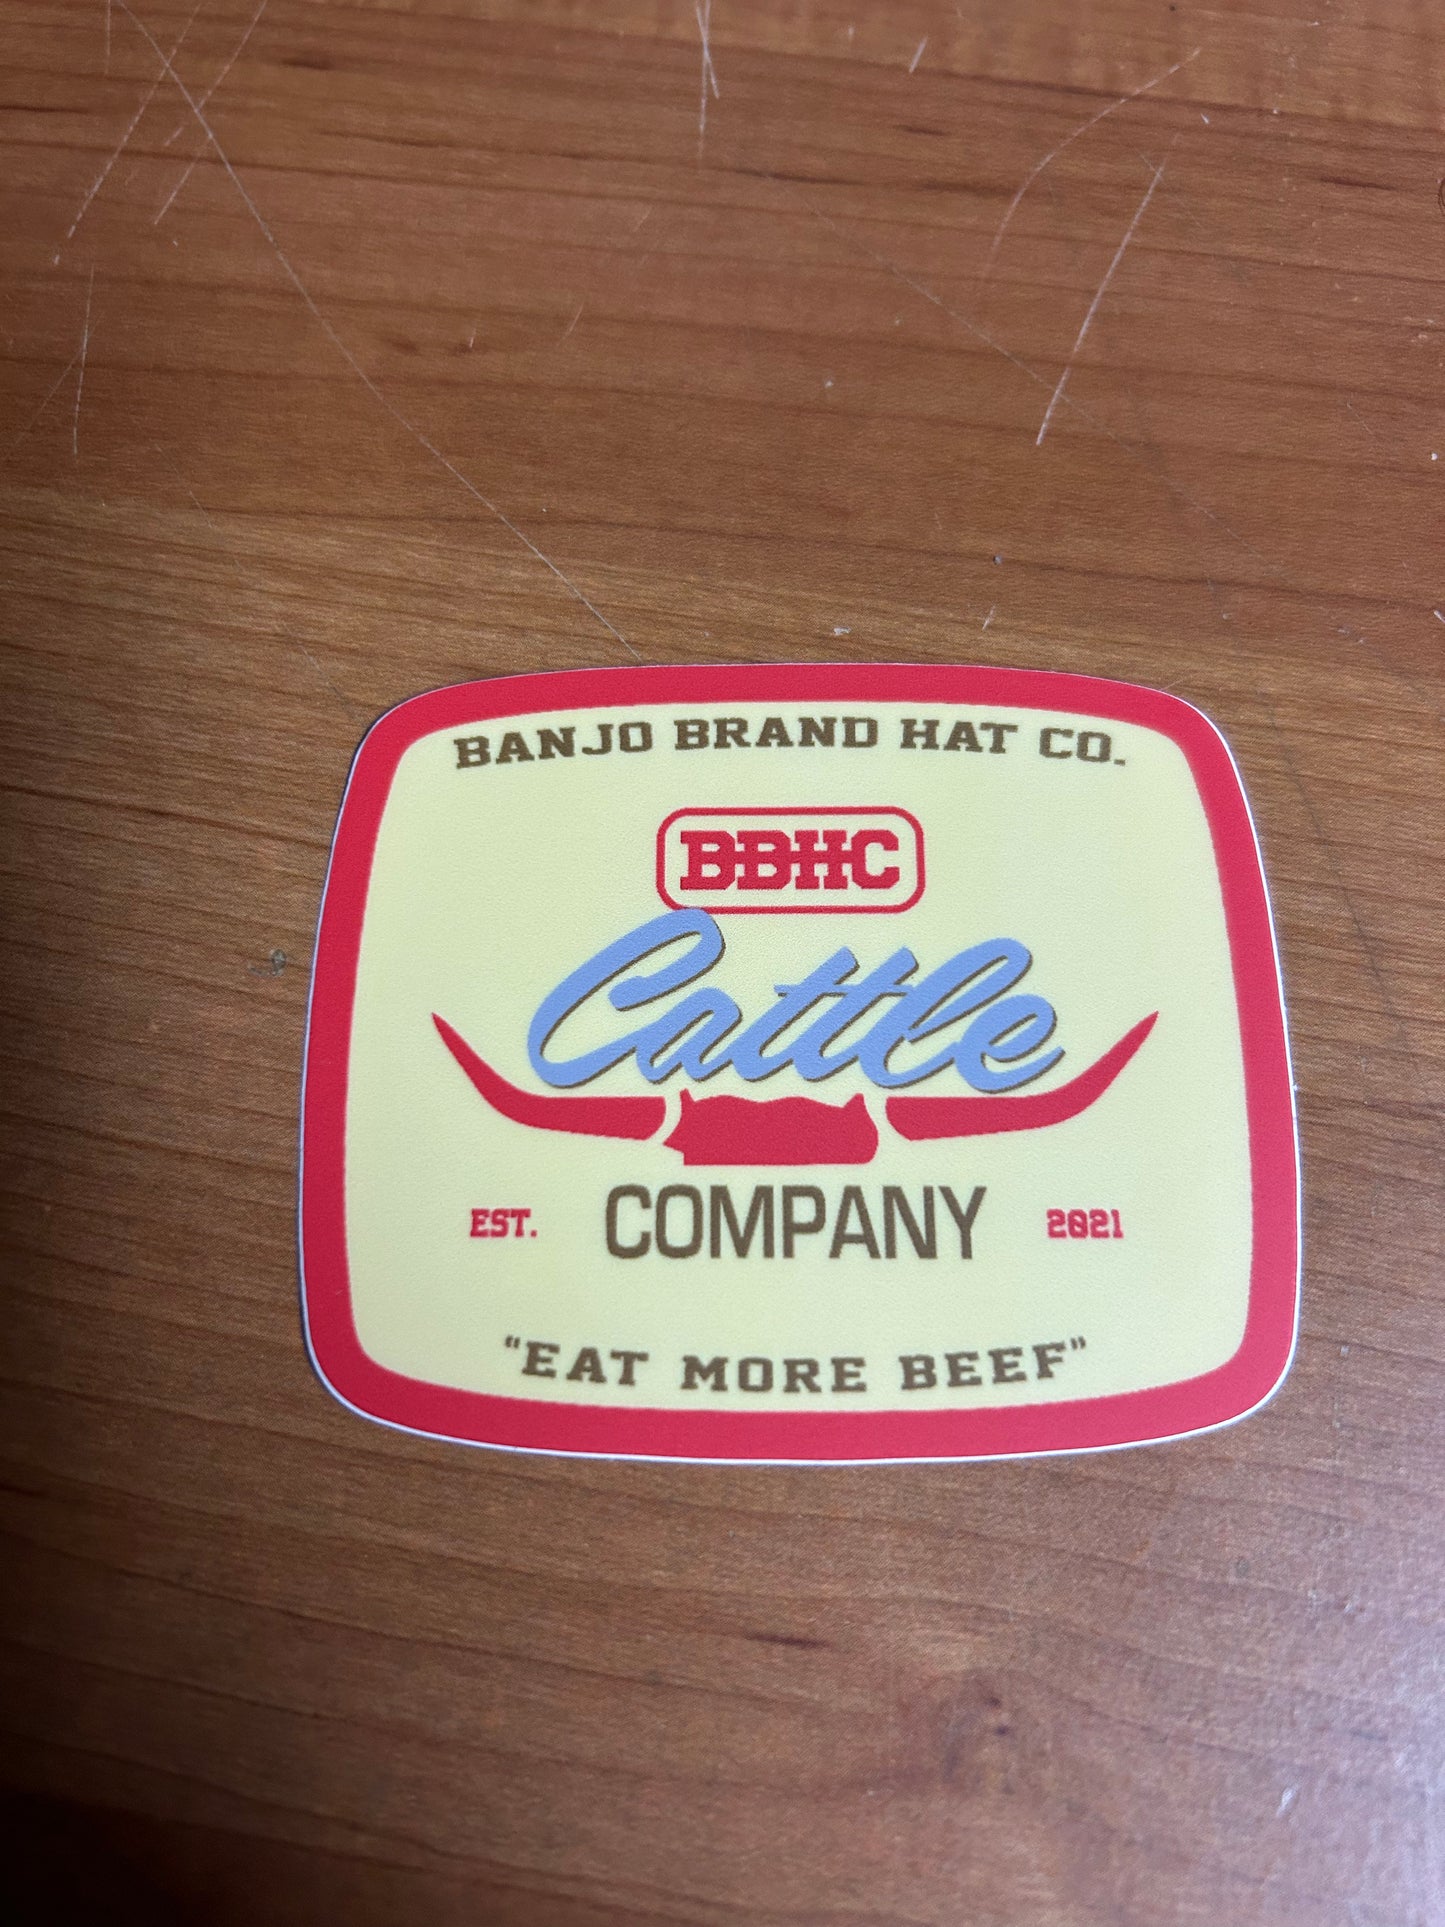 Banjo Brand Cattle Co sticker